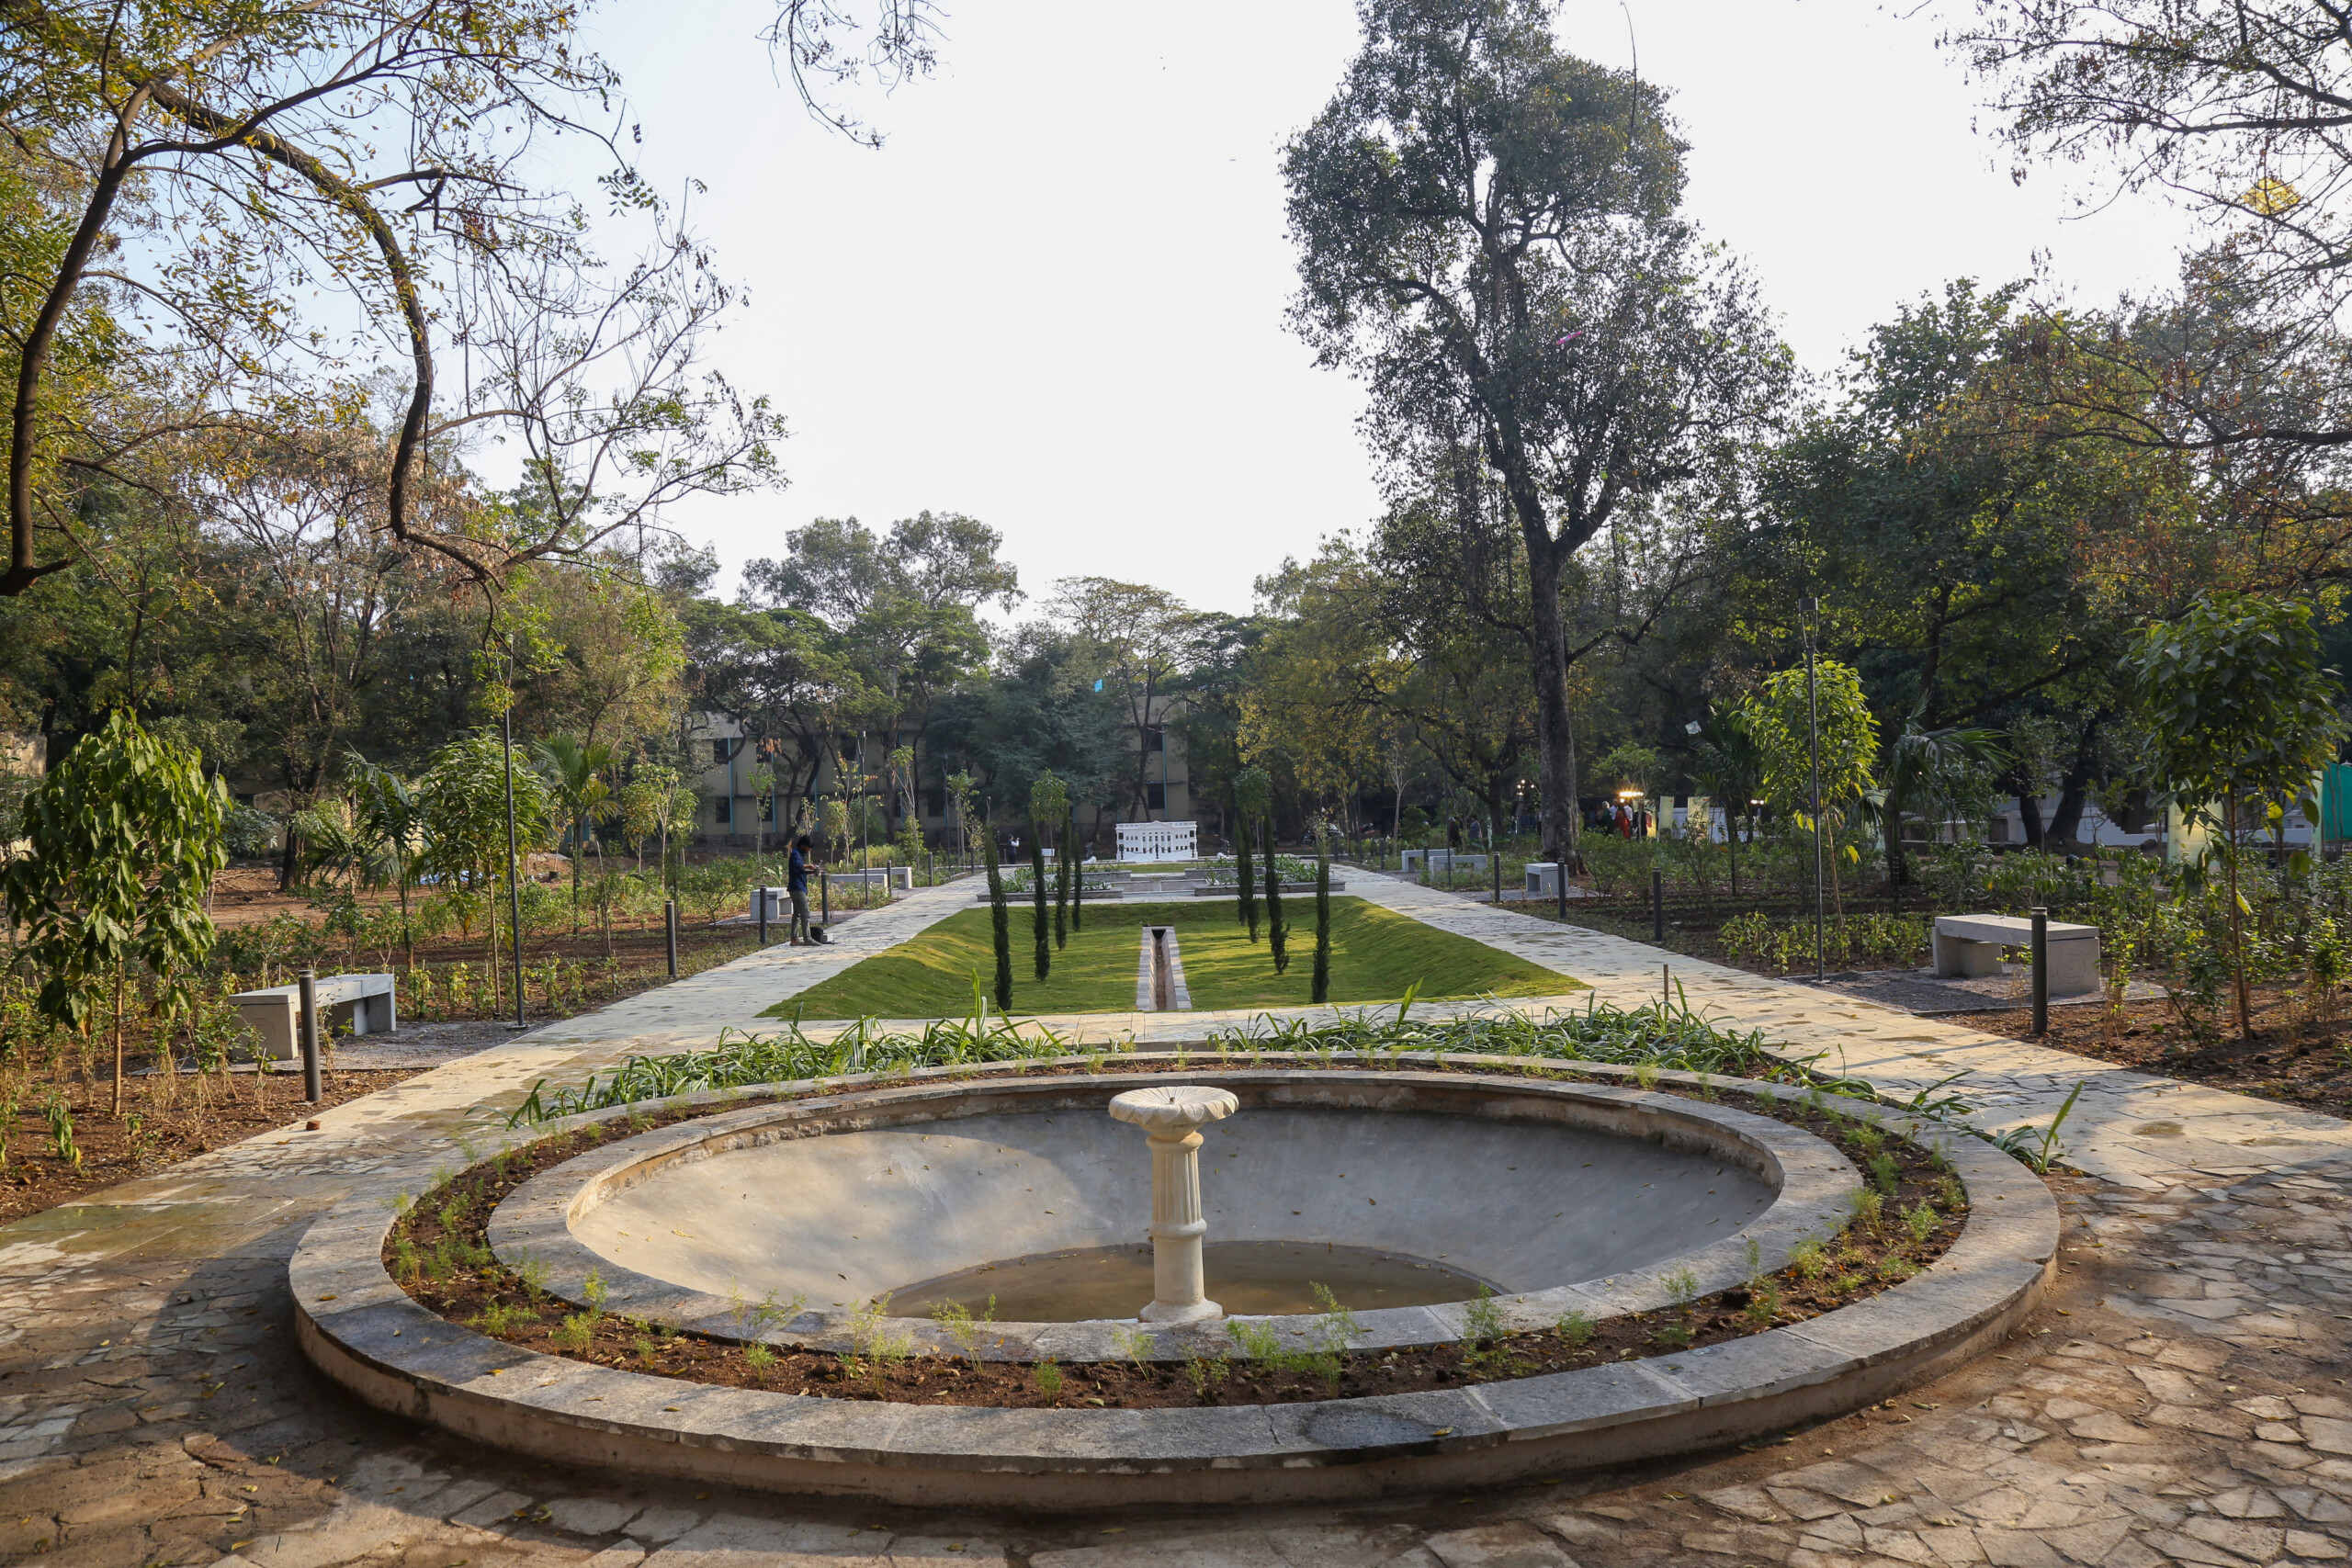 Rang Mahal Gateway and Gardens at the Hyderabad Residency, Telangana